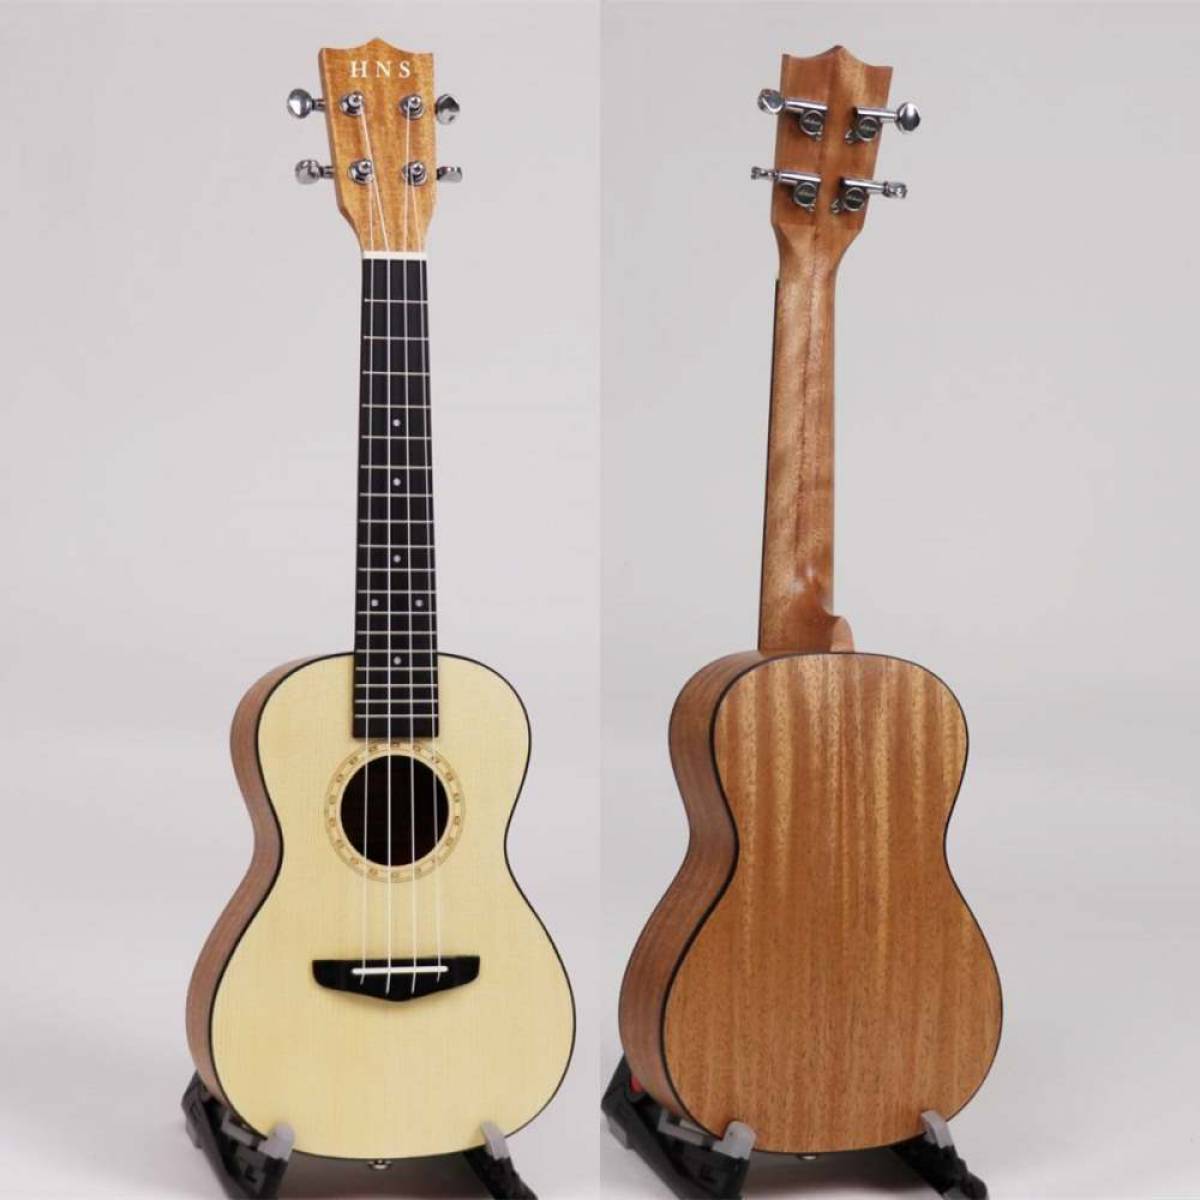 Spruce plywood ukulele in matt finish